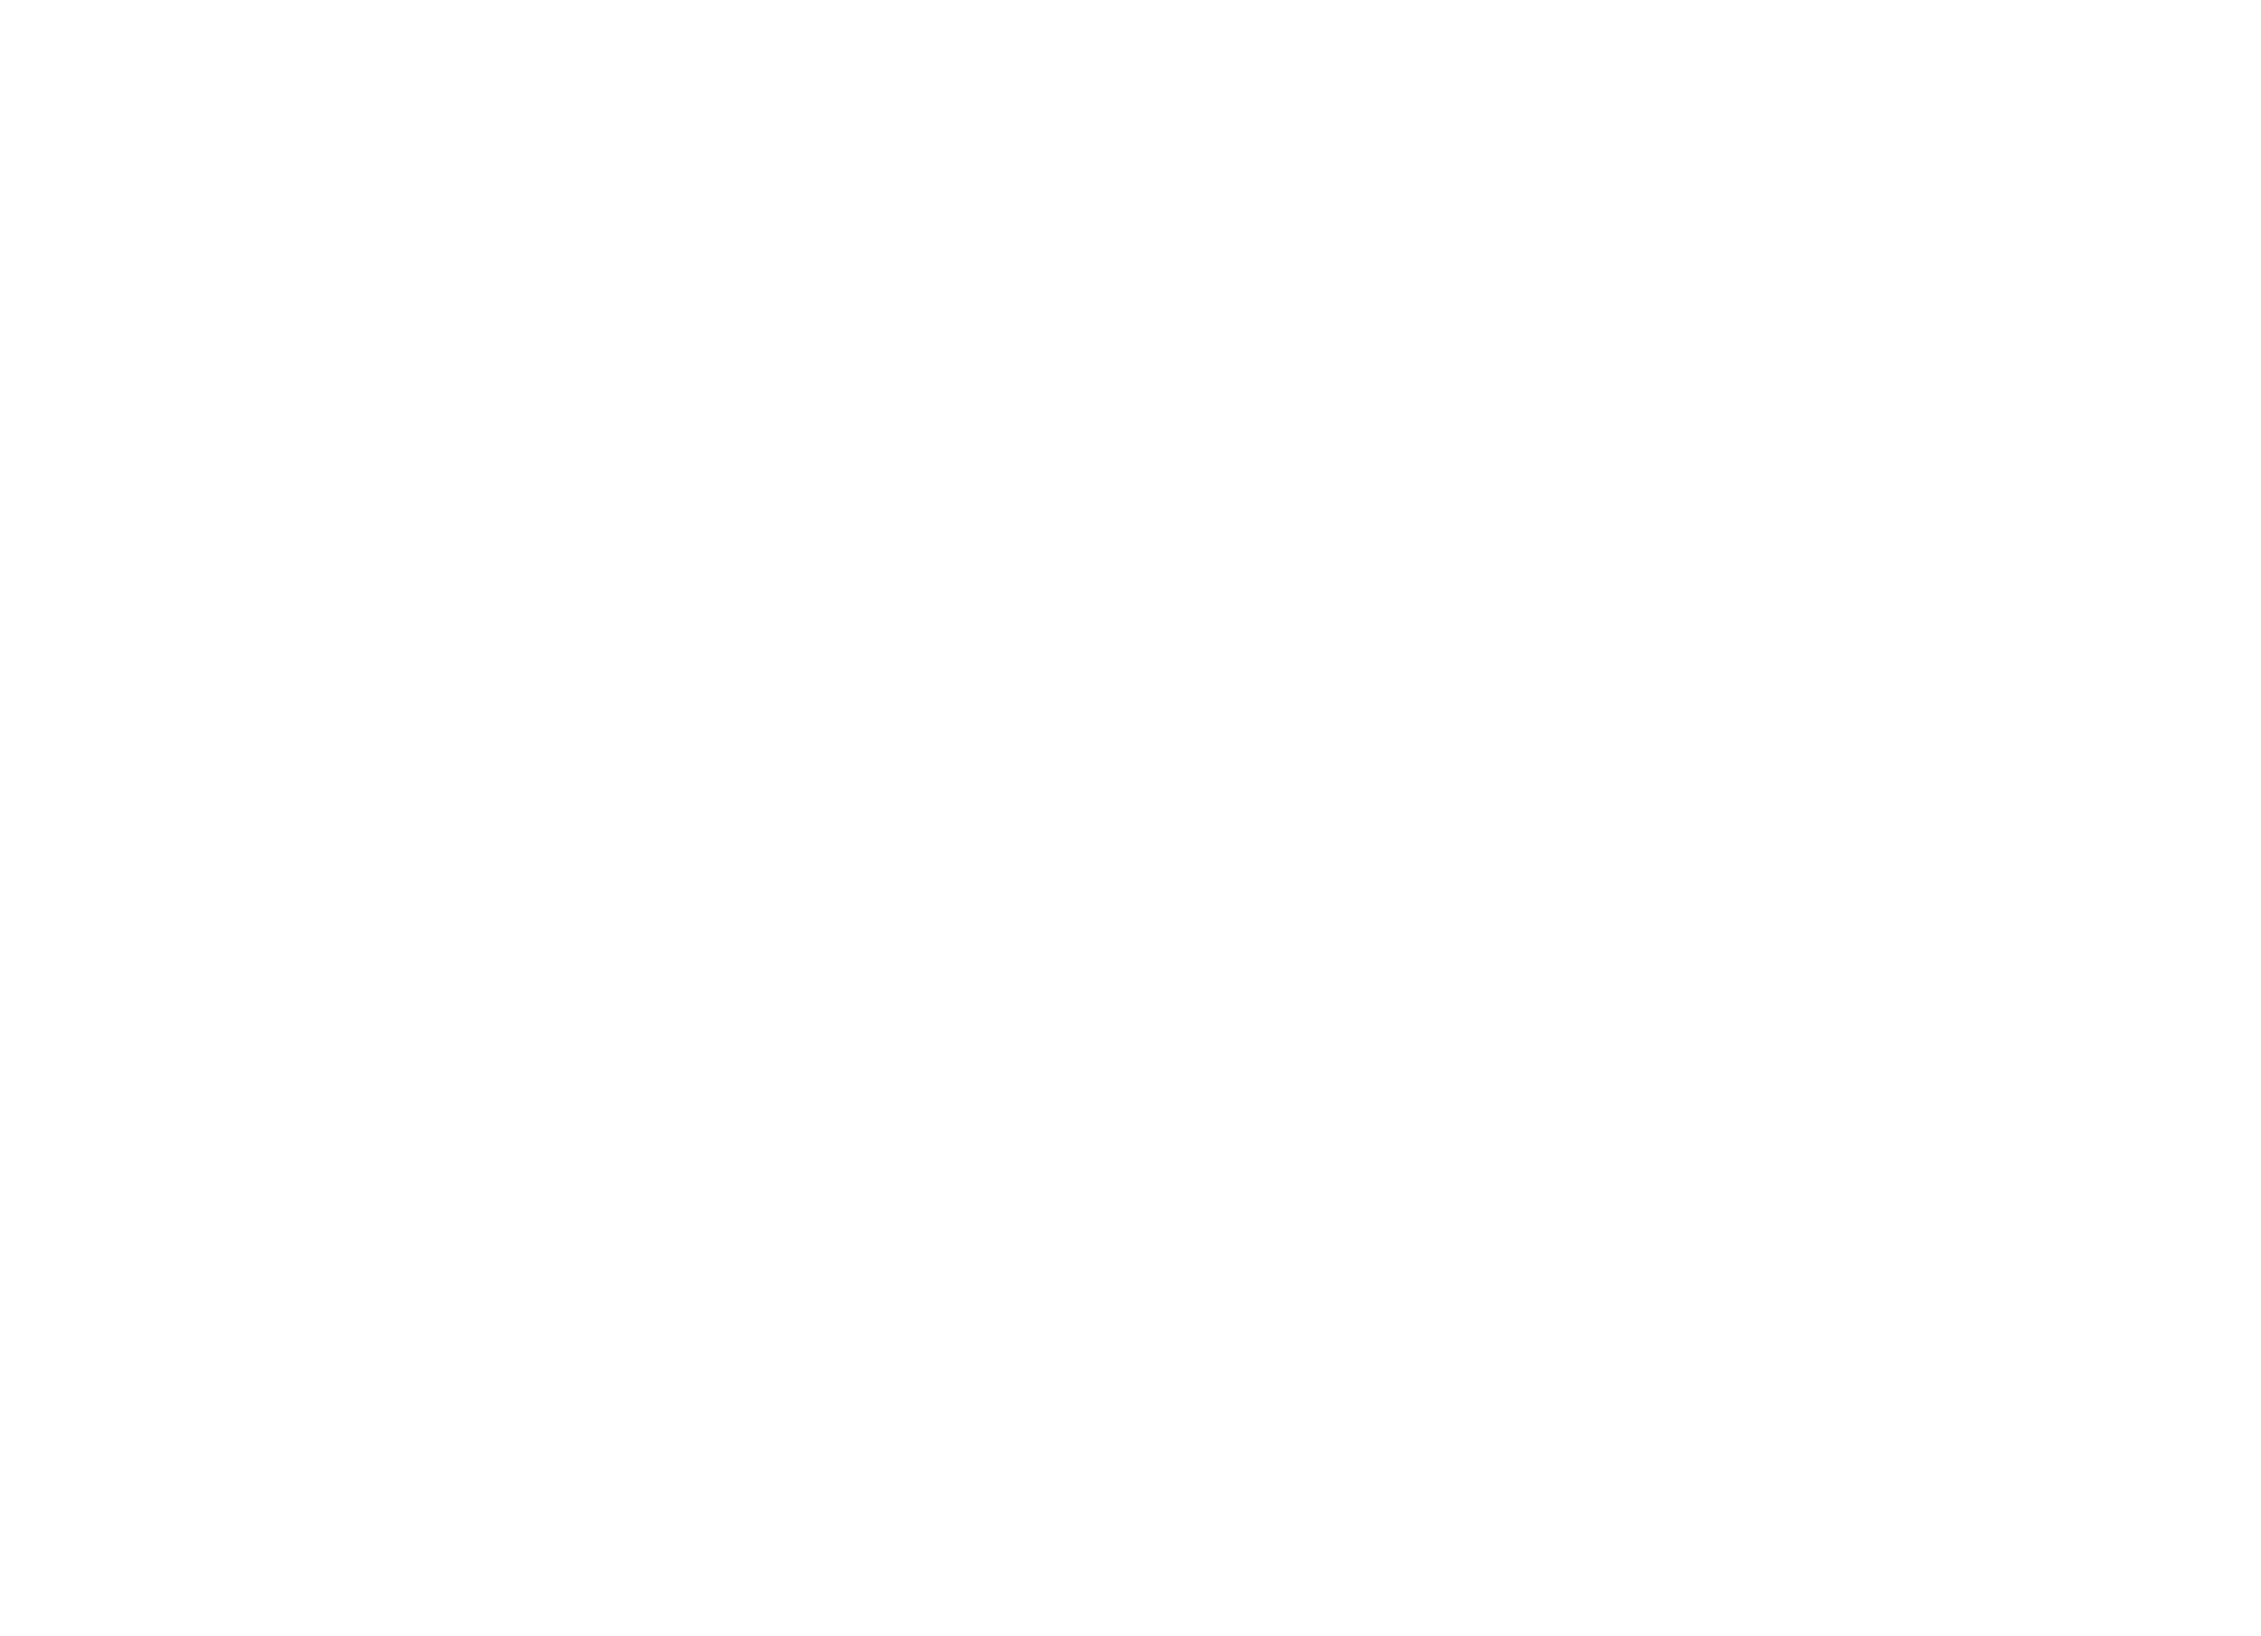 Rio Info 2021 - Multipotencial